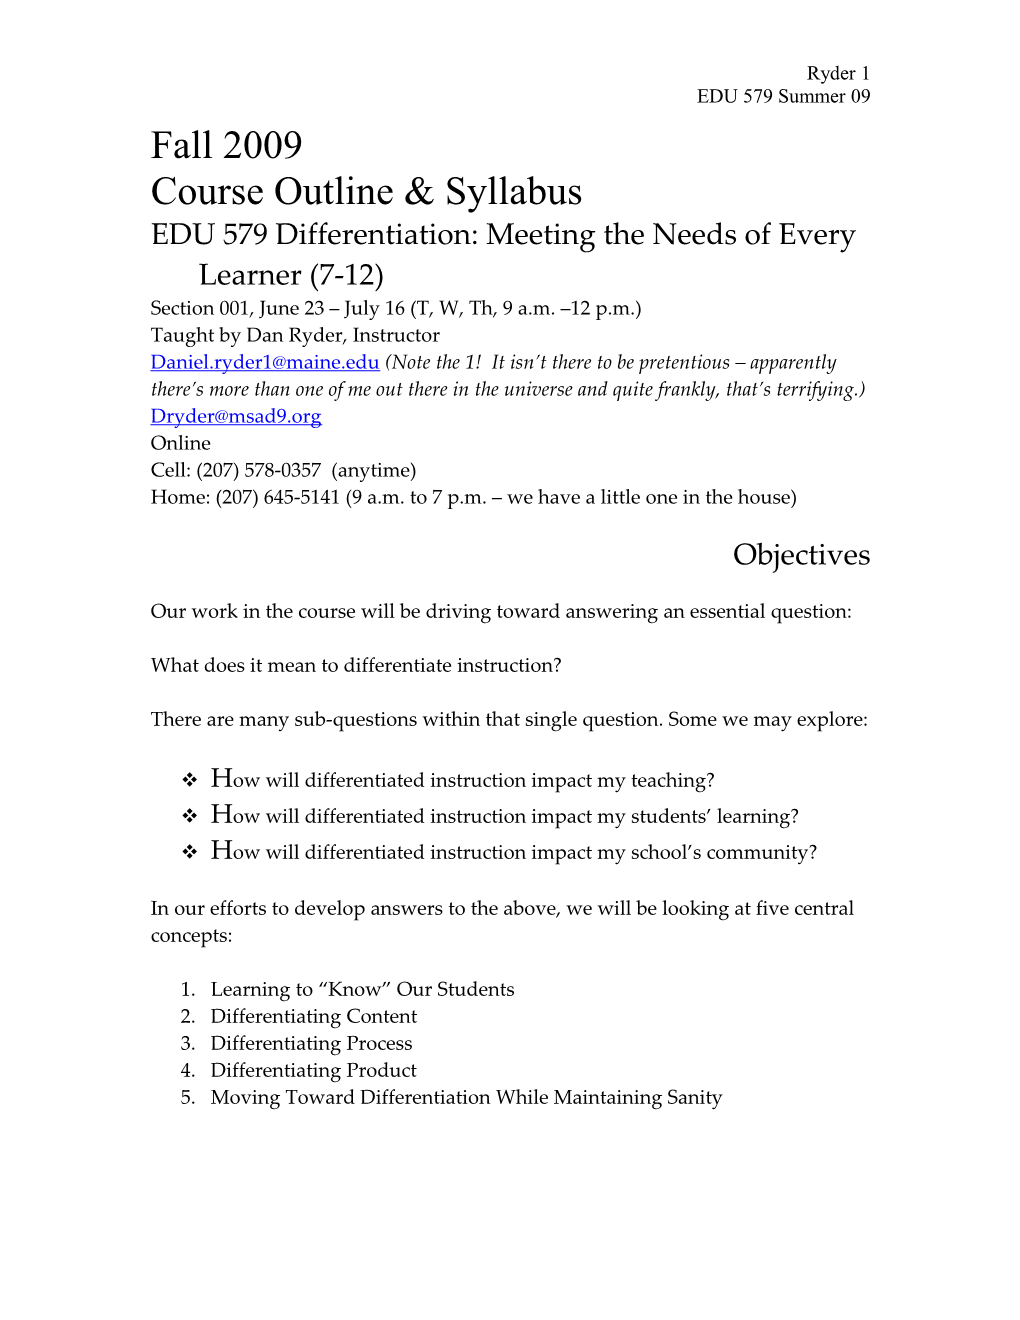 Spring 2007 Course Outline & Syllabus